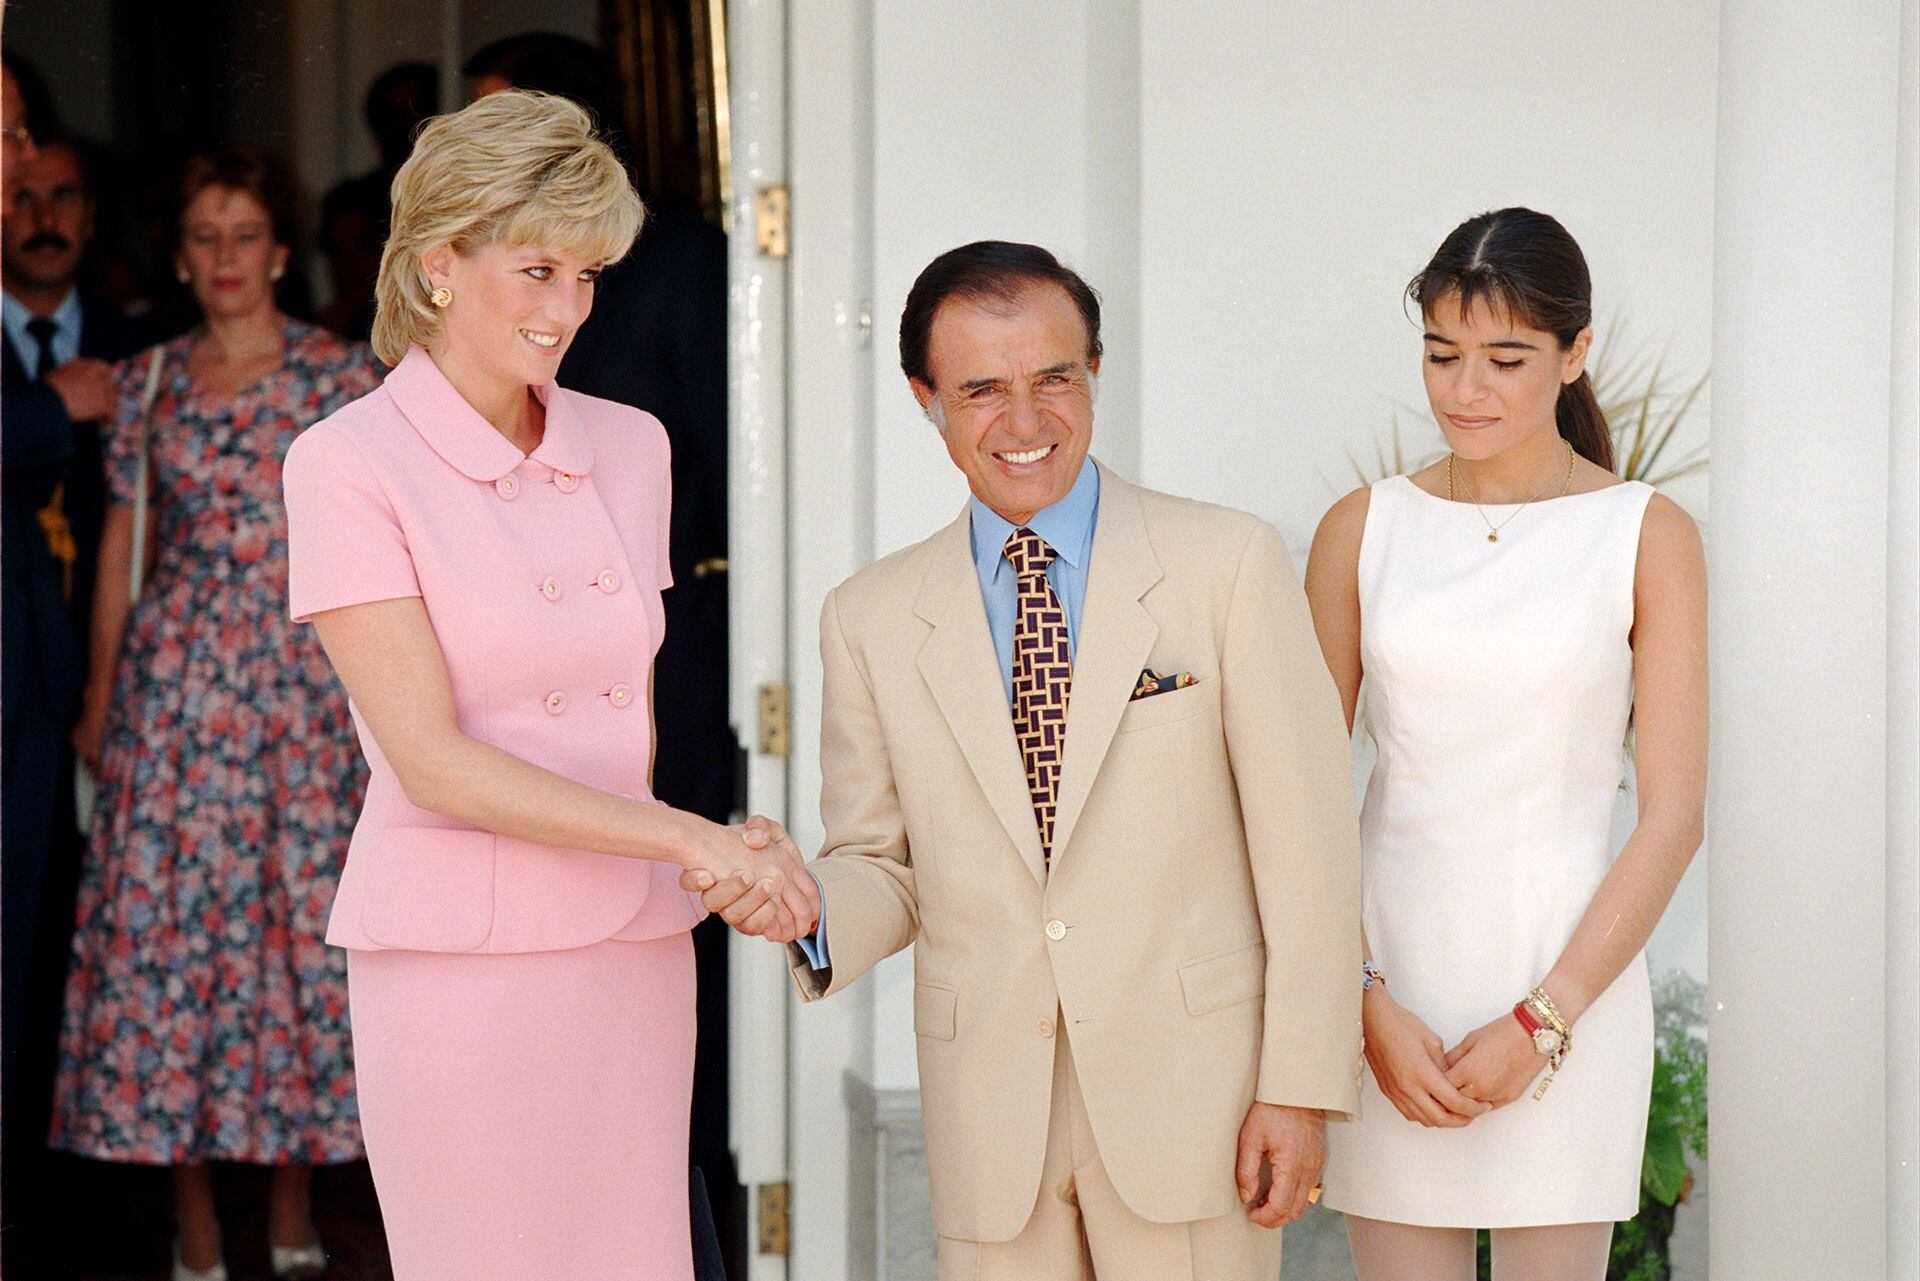 La princesa Diana visitó a Menem y a su hija Zulemita en la Quinta de Olivos en 1995. Fue una visita extraoficial ya que Diana se encontraba separada del príncipe Carlos. Ese fue uno de los primeros contactos del mandatario con miembros de la realeza británica tras el conflicto en el Atlántico Sur.  El actual canciller Jorge Faurie, entonces director nacional de Ceremonial fue el encargado de organizar la visita. (Tim Rooke/Shutterstock)